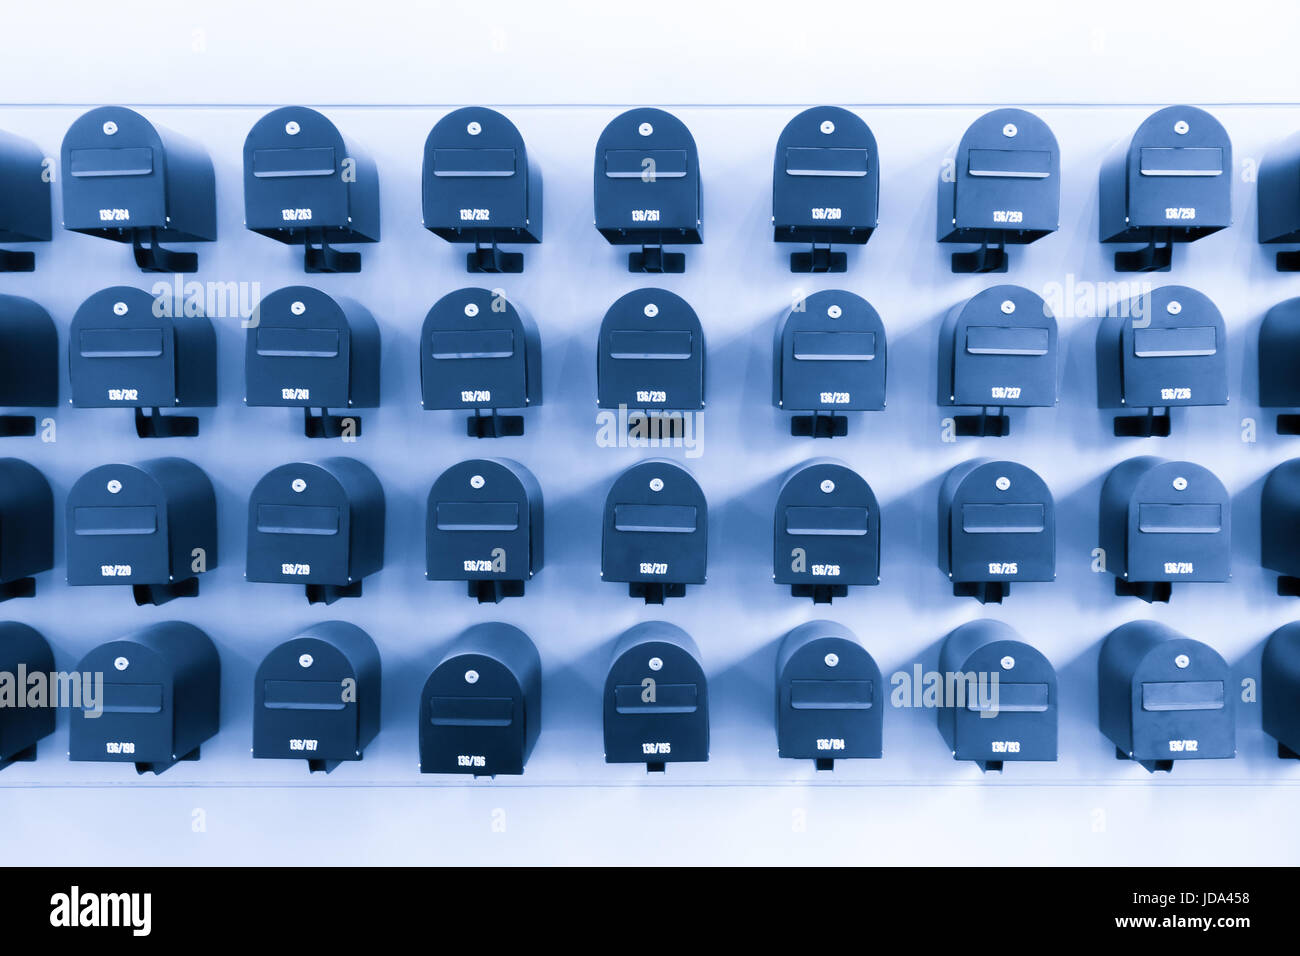 Los buzones en residencial para informaciones y noticias con su número de habitación, en tonos de azul. Foto de stock